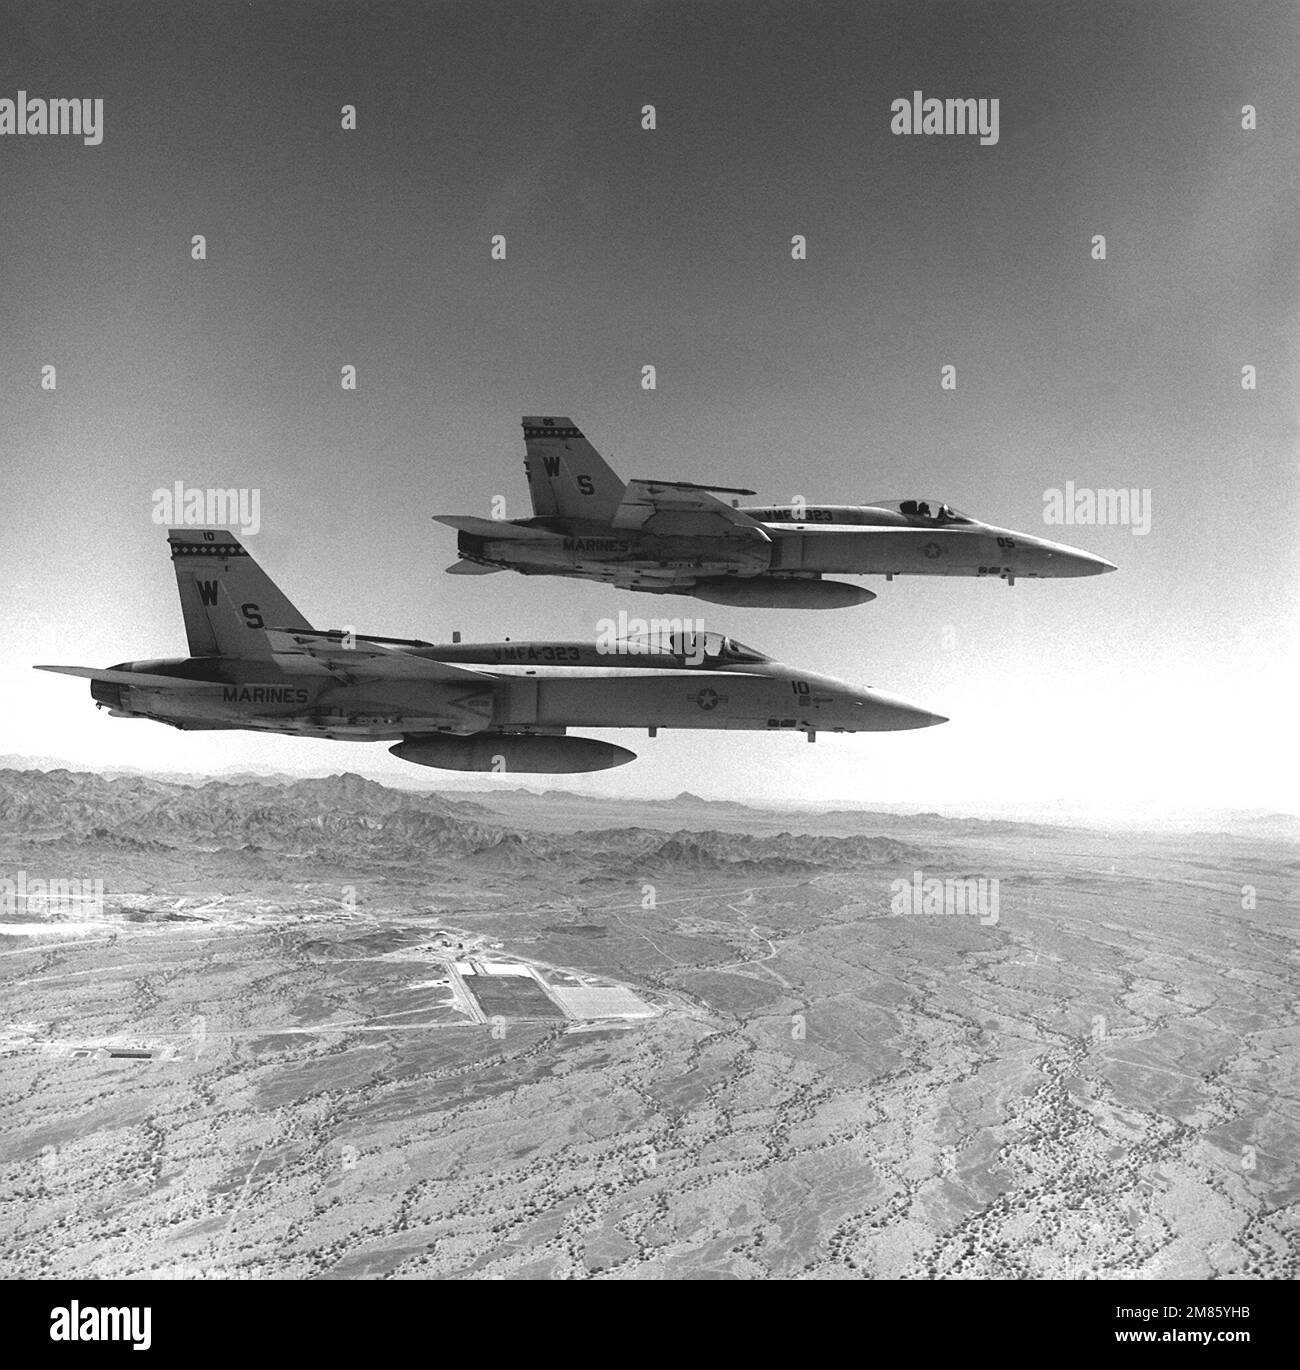 Una vista dal lato destro aria-aria di due aerei Marine Fighter Attack Squadron 323 (VMFA-323) F/A-18A Hornet. Gli aerei sono in volo sopra l'area operativa della California del Sud vicino alla Stazione aerea del corpo Marino, Yuma, Ariz.. Stato: California (CA) Paese: Stati Uniti d'America (USA) Foto Stock